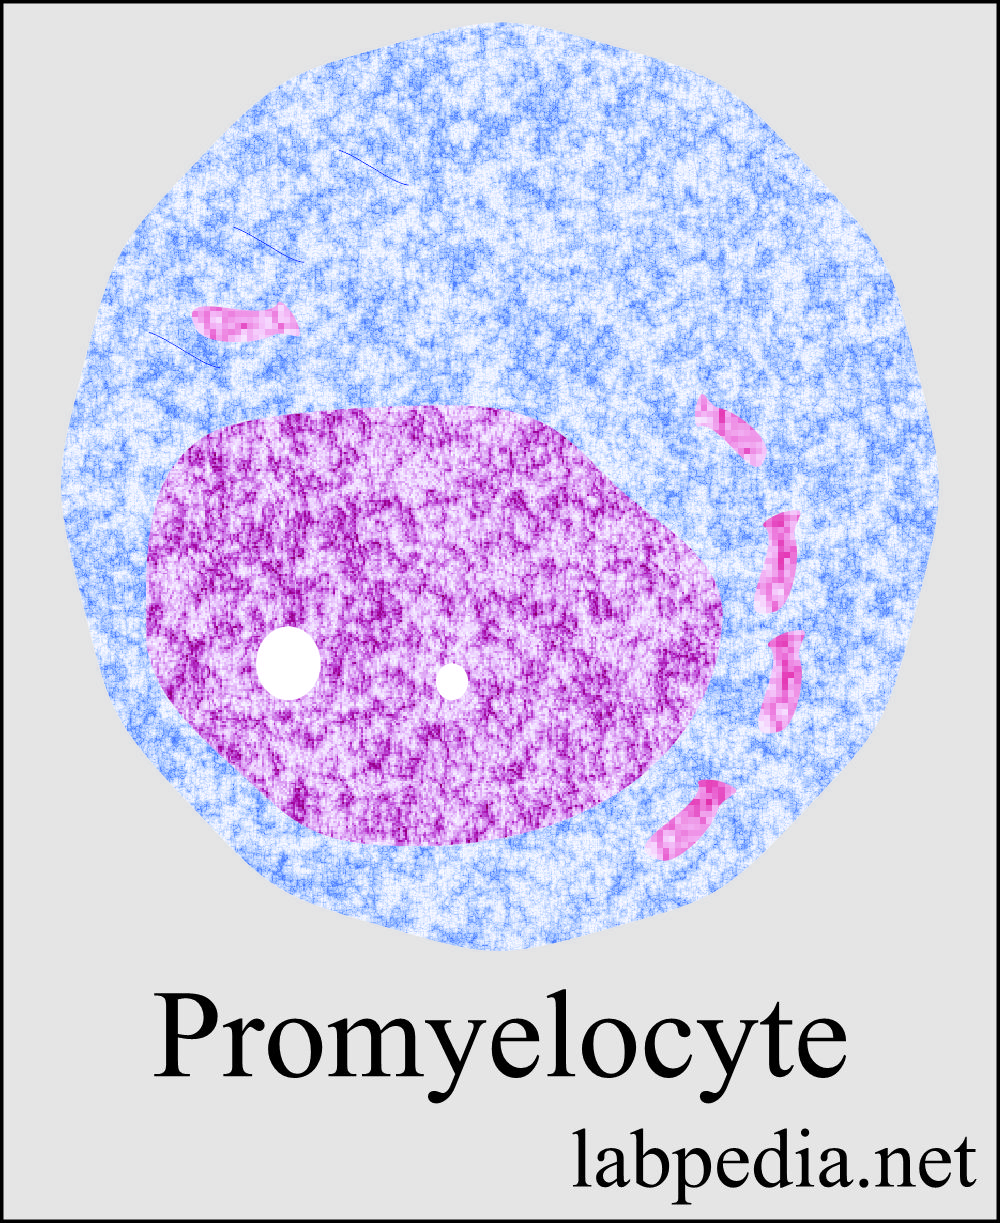 Promyelocyte